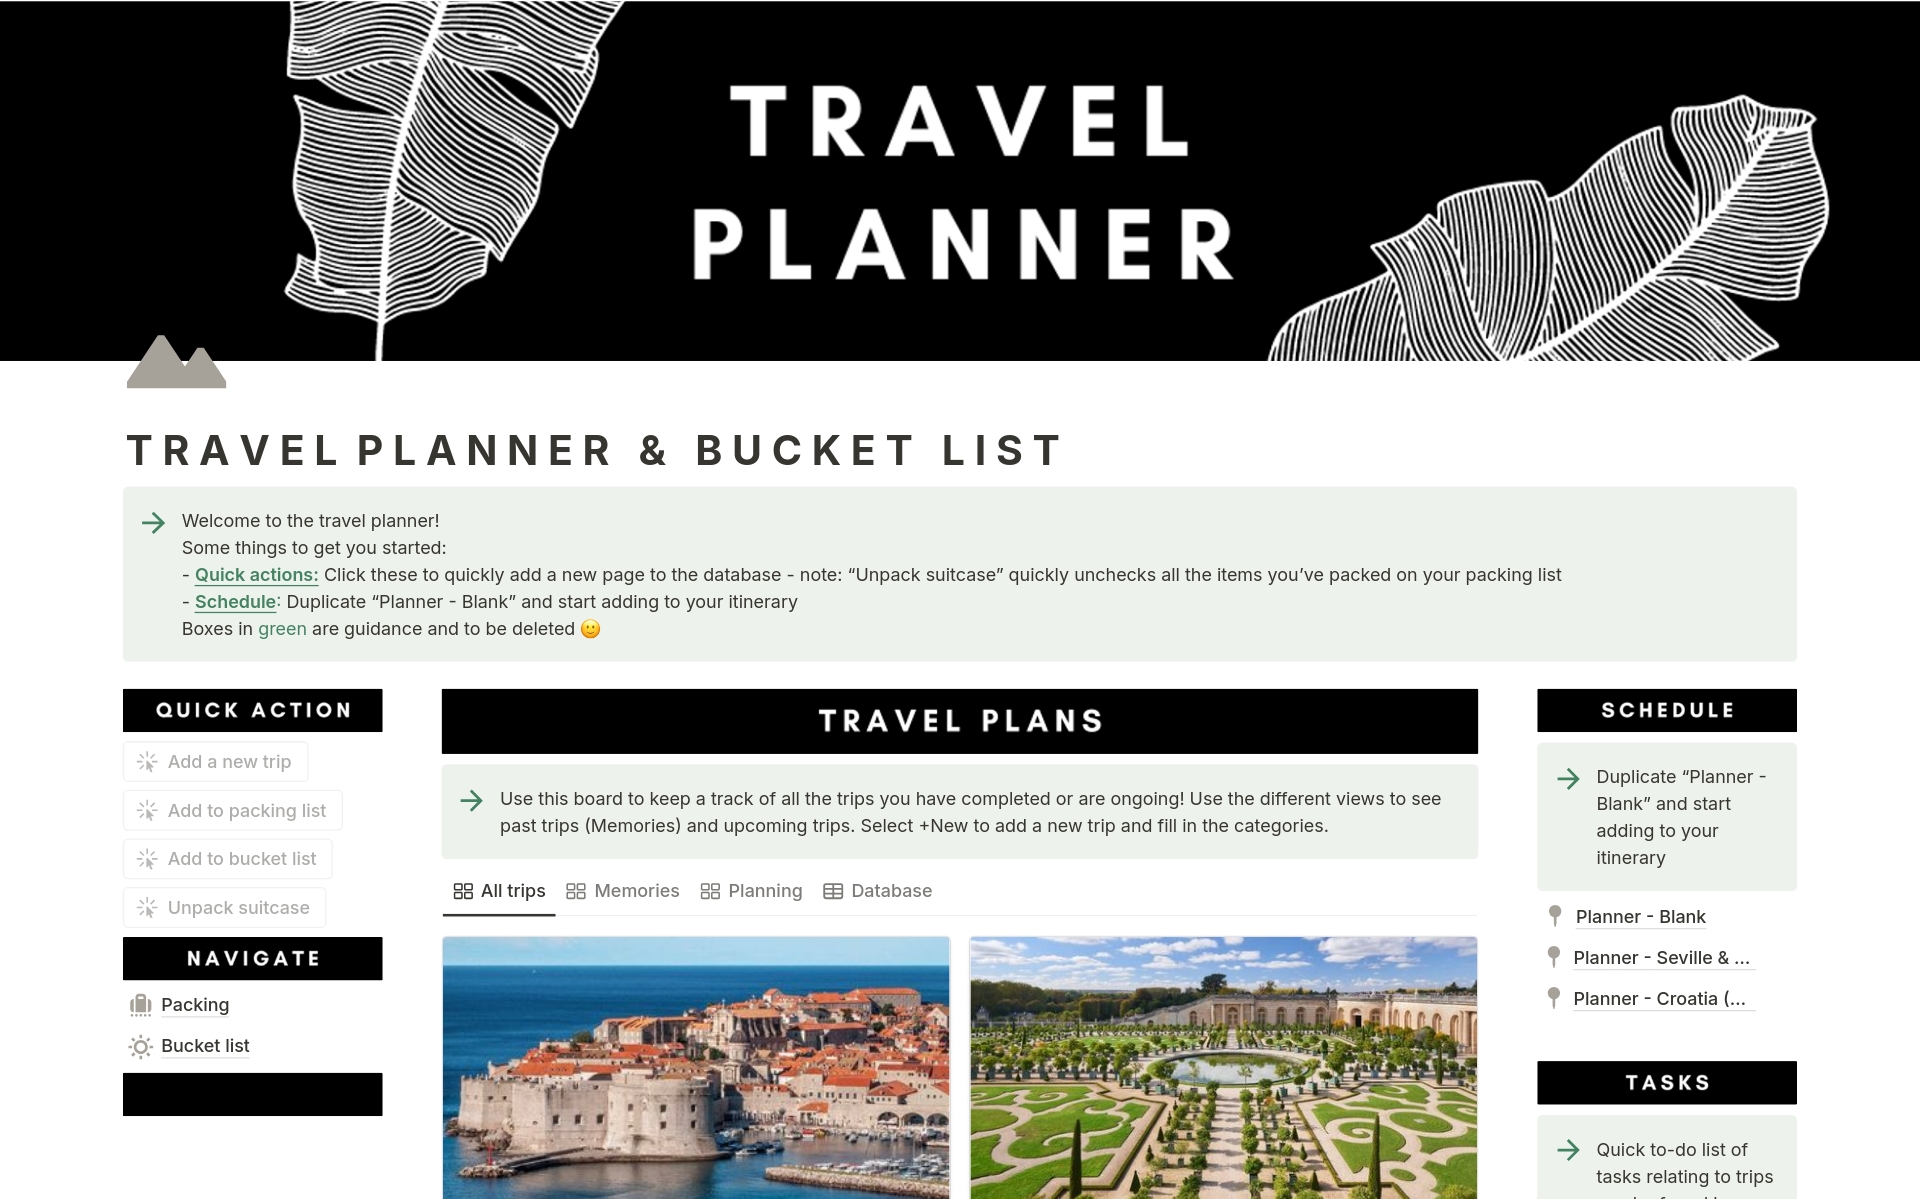 Aperçu du modèle de Travel planner & bucket list